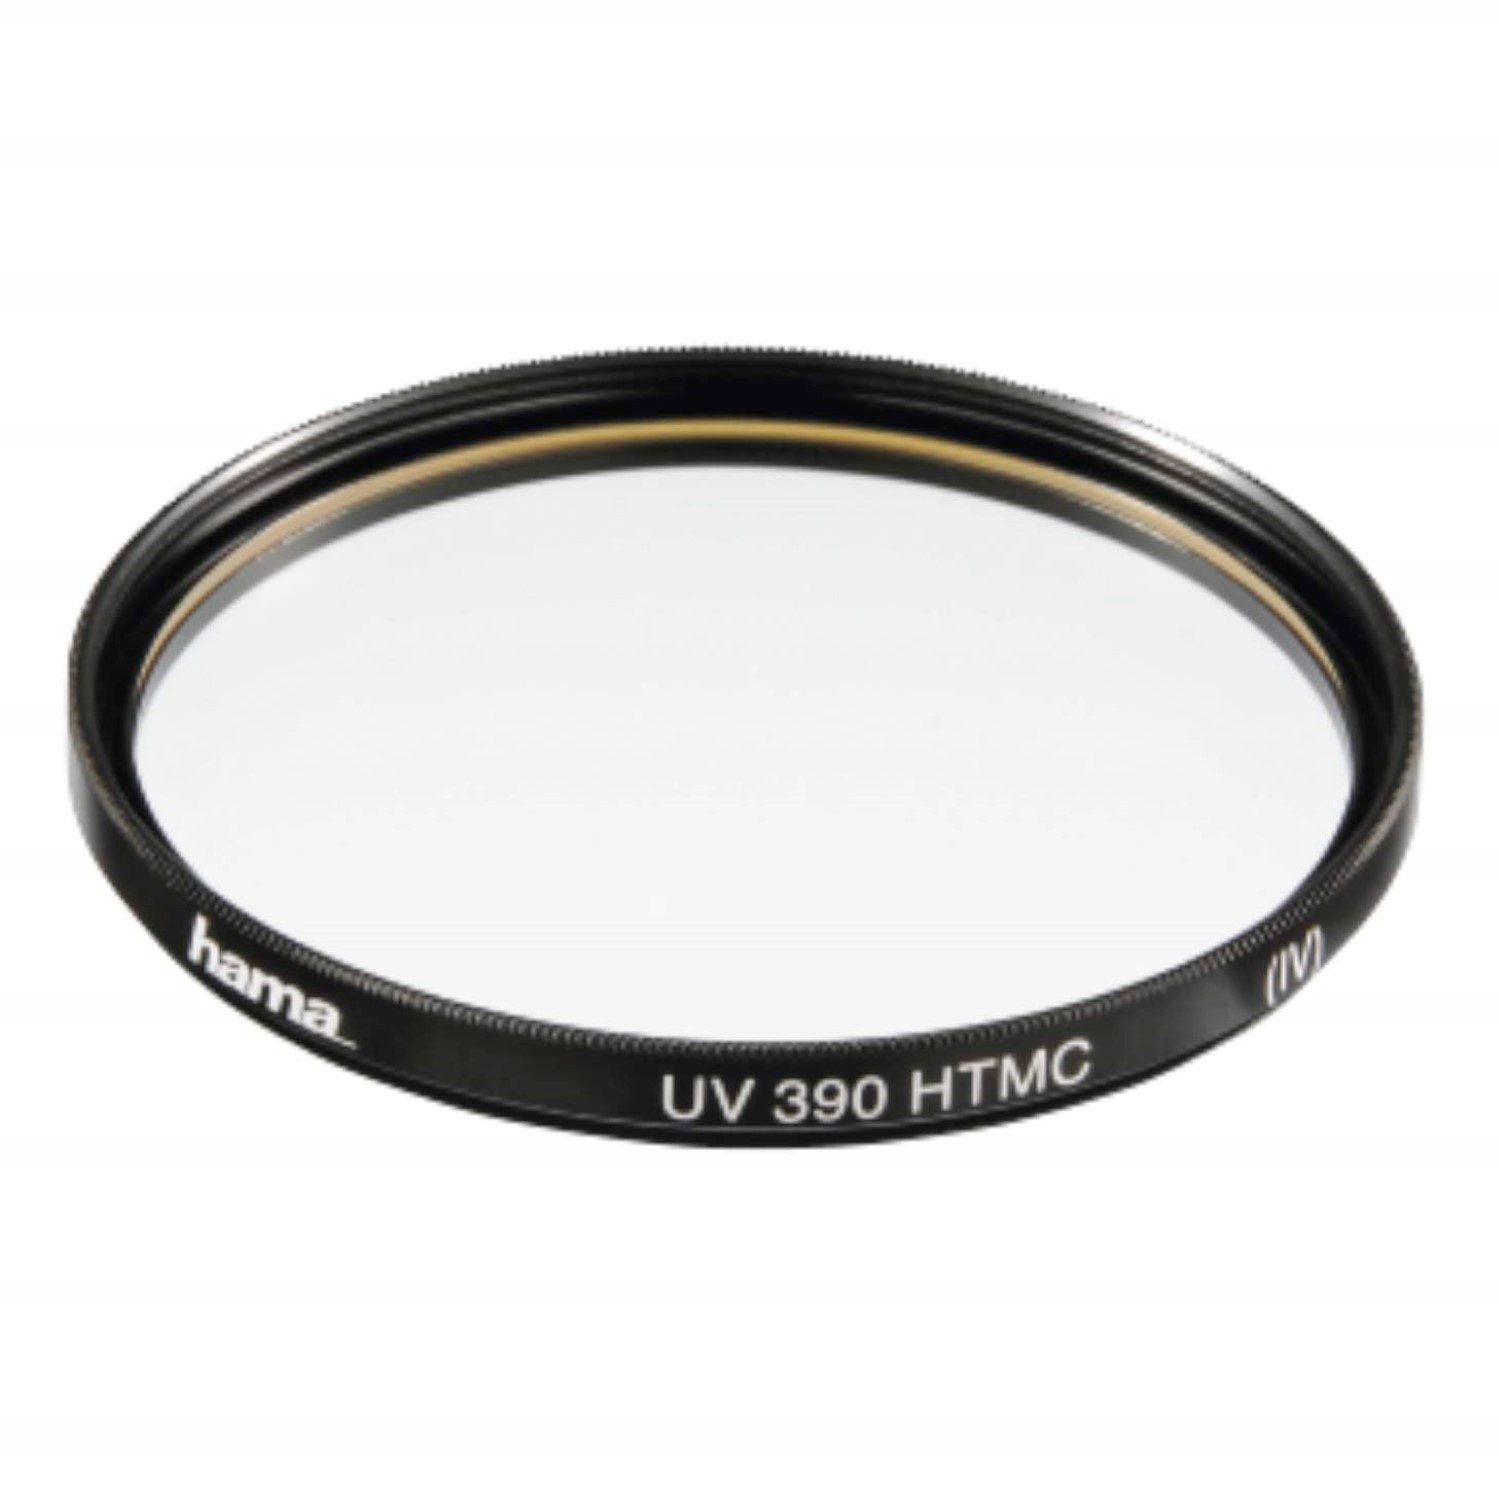 Hama UV-Filter 55mm HTMC vergütet Schwarz Objektivzubehör (Speer-Filter UV-Filter Kamera Objektiv DSLR SLR Systemkamera)